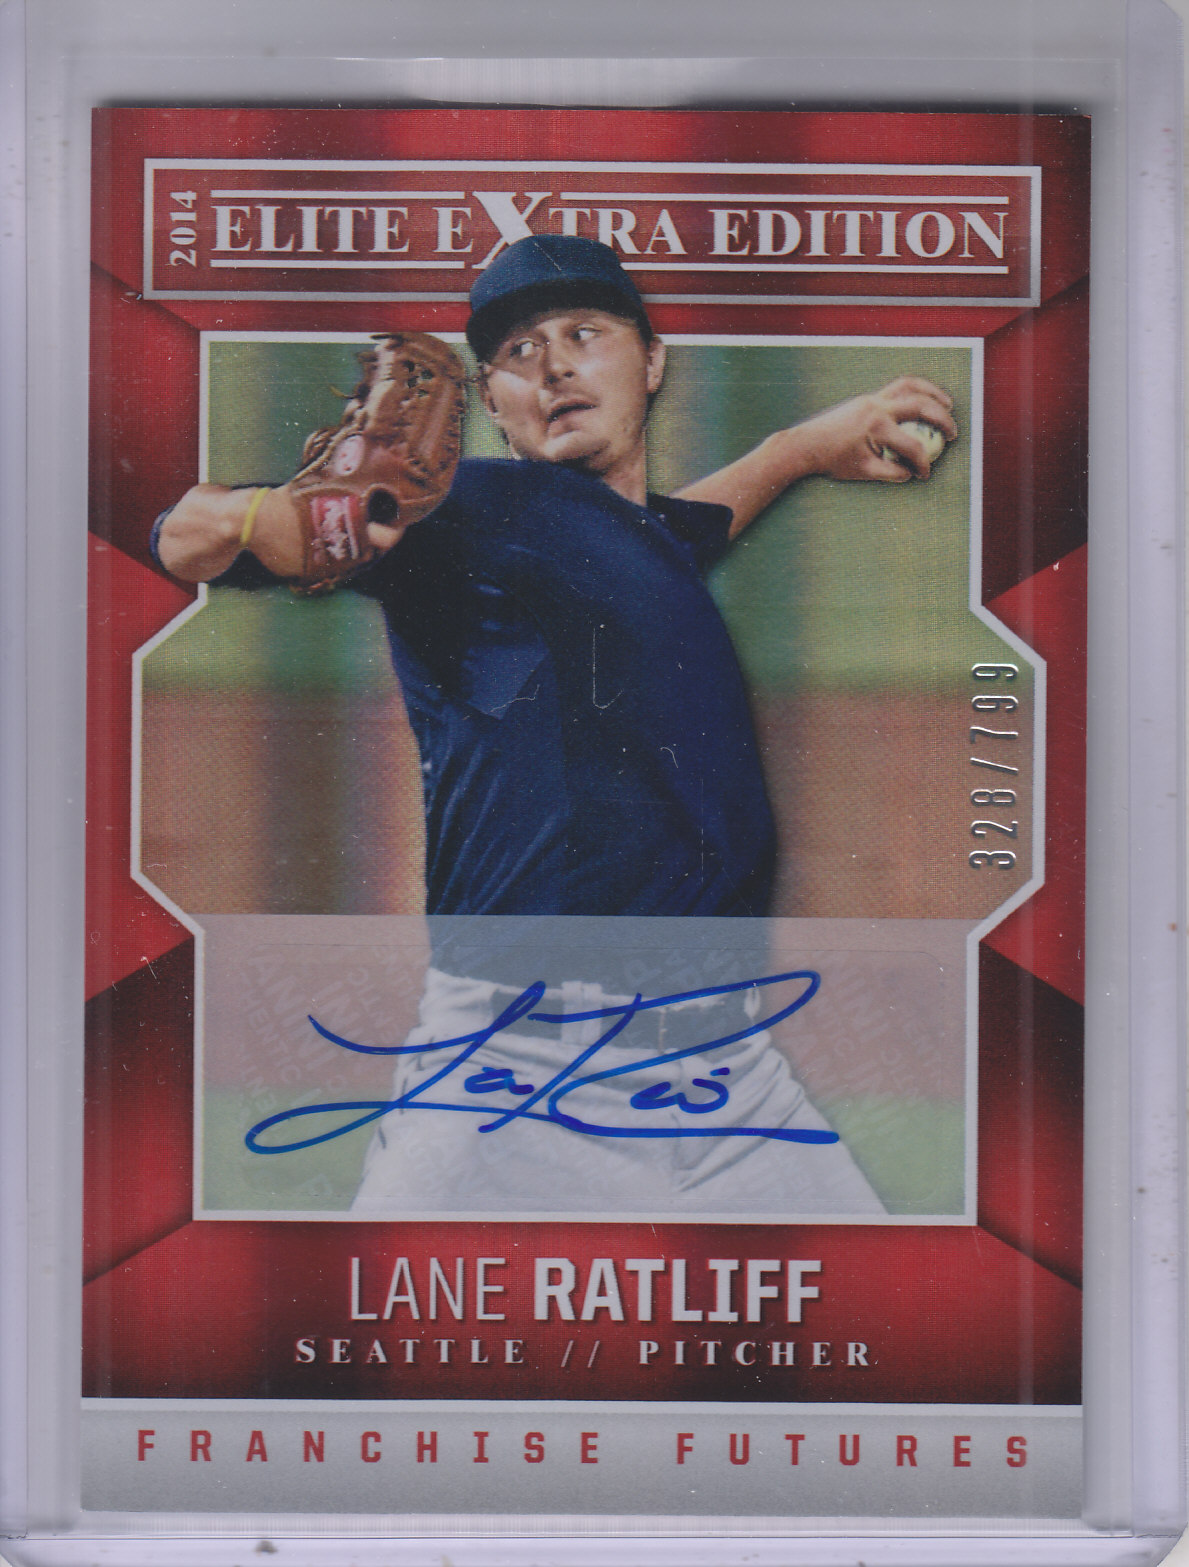  Lane Ratliff player image